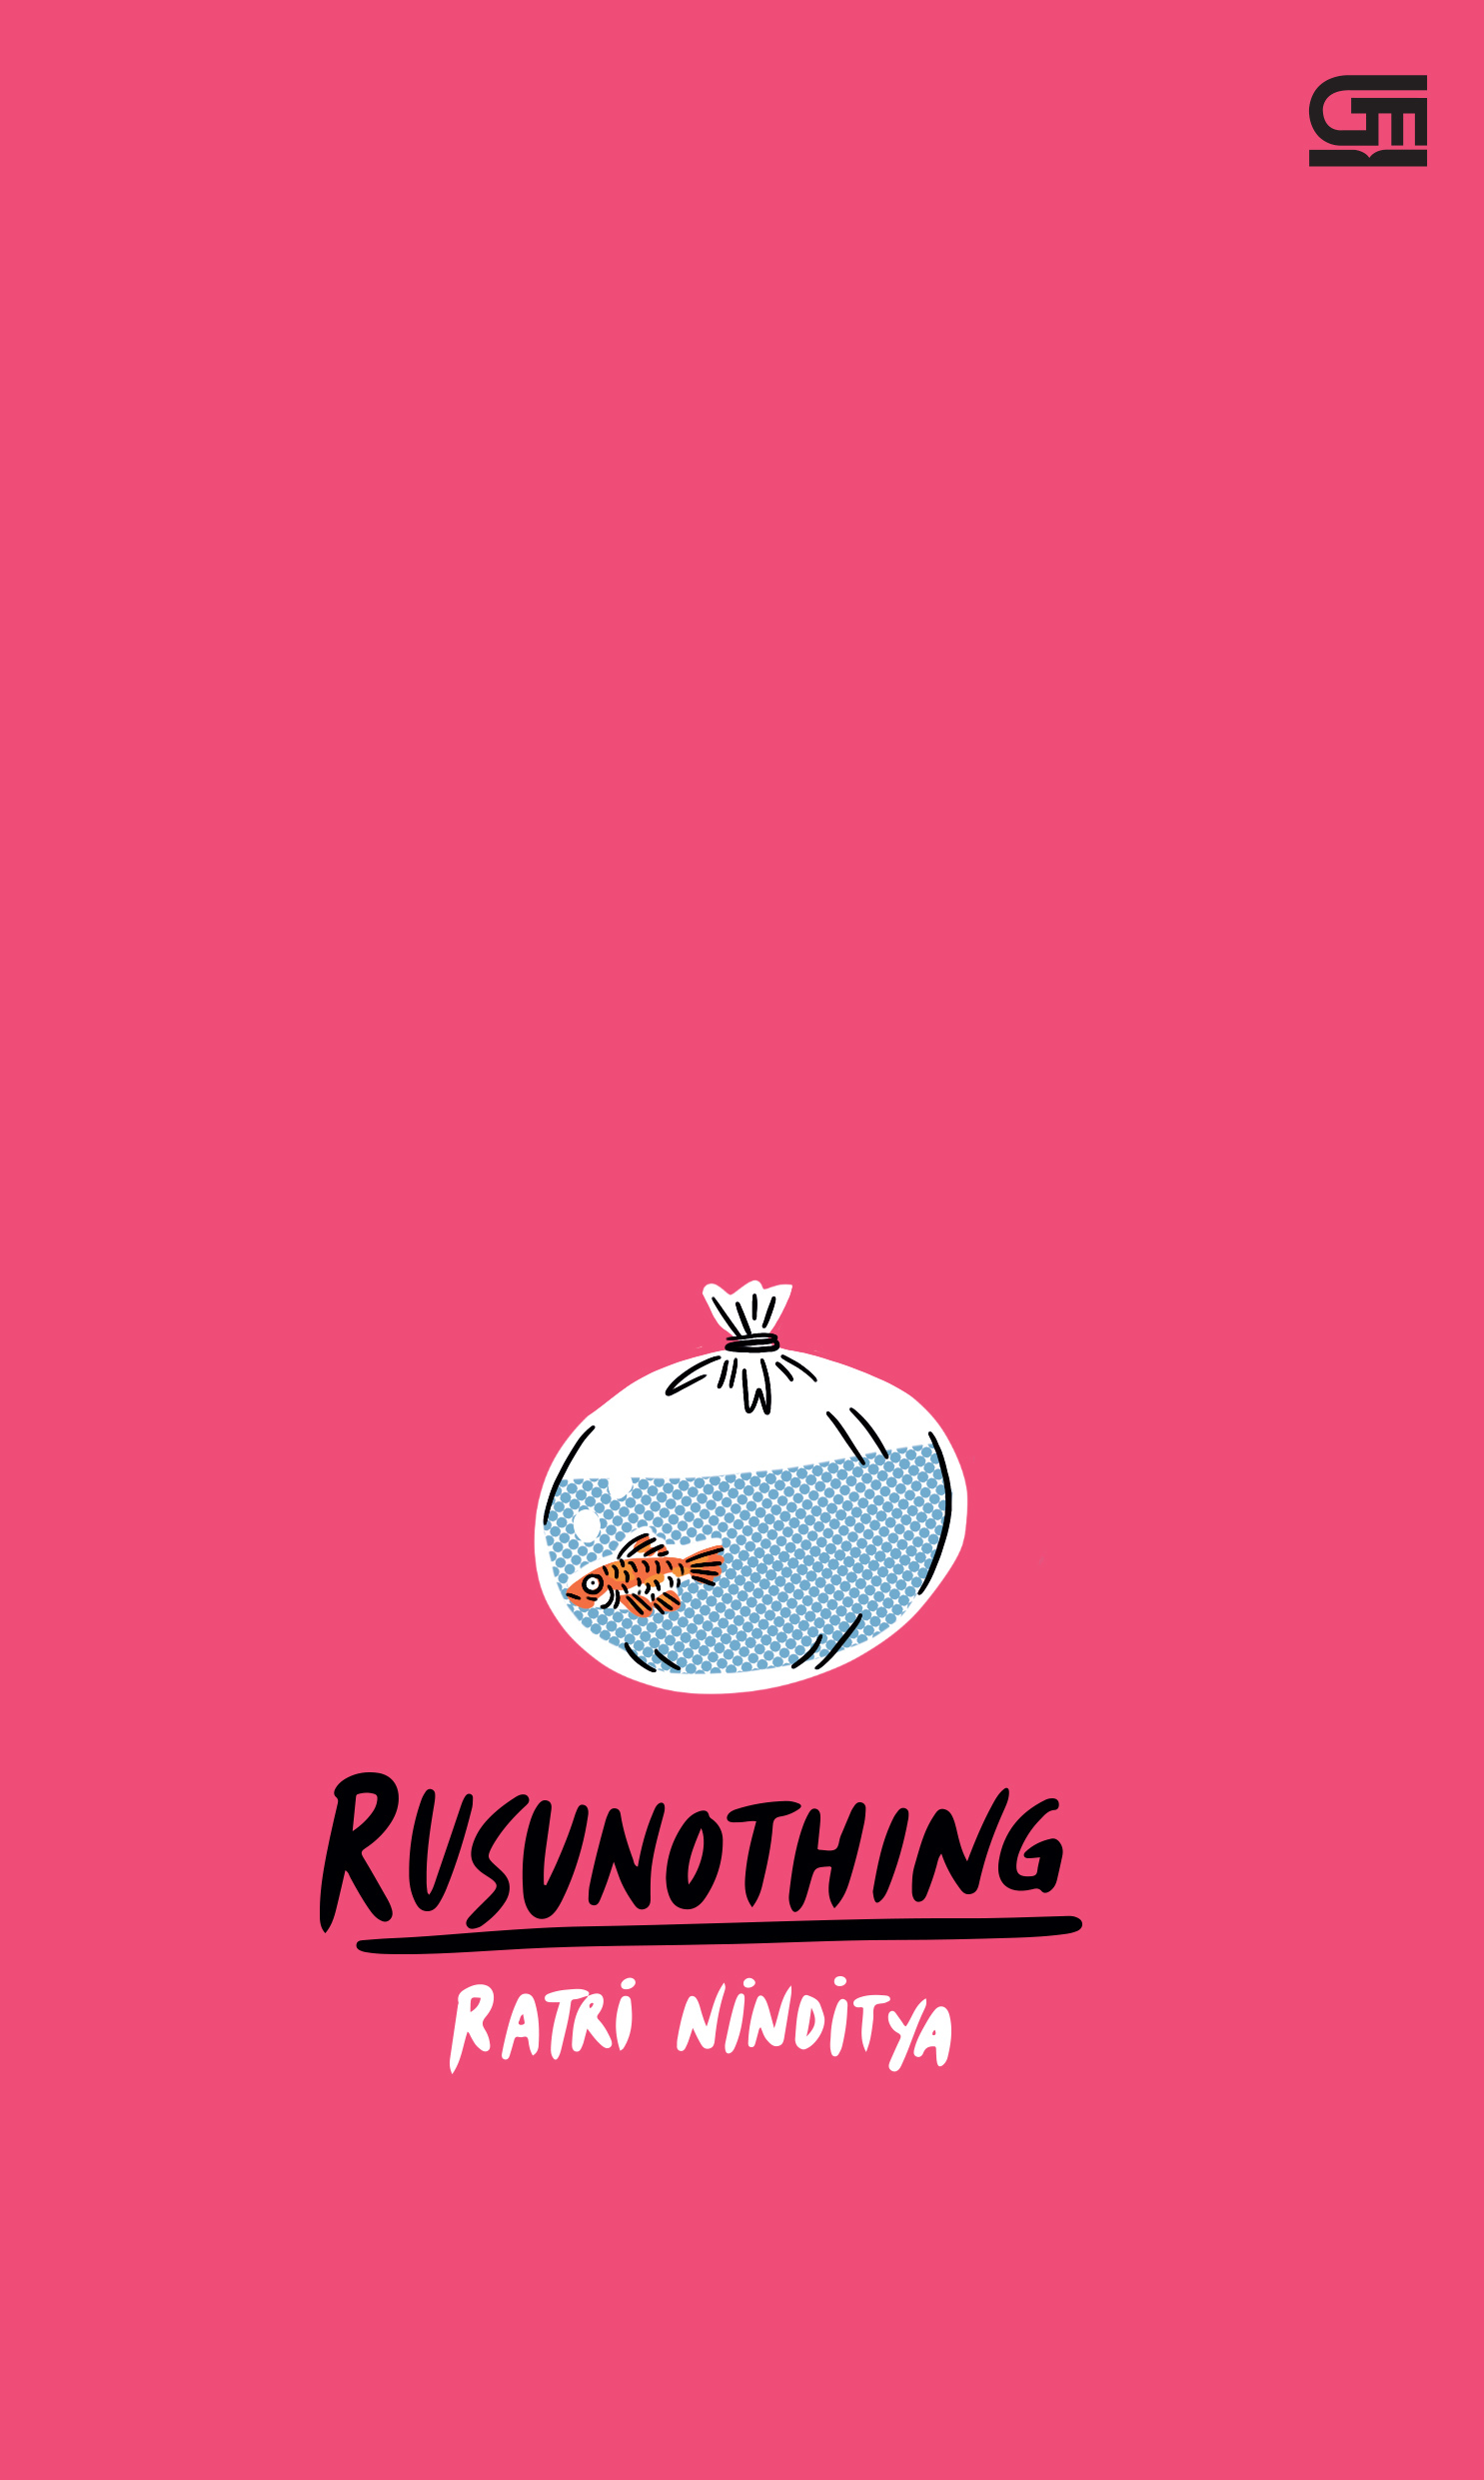 Rusunothing